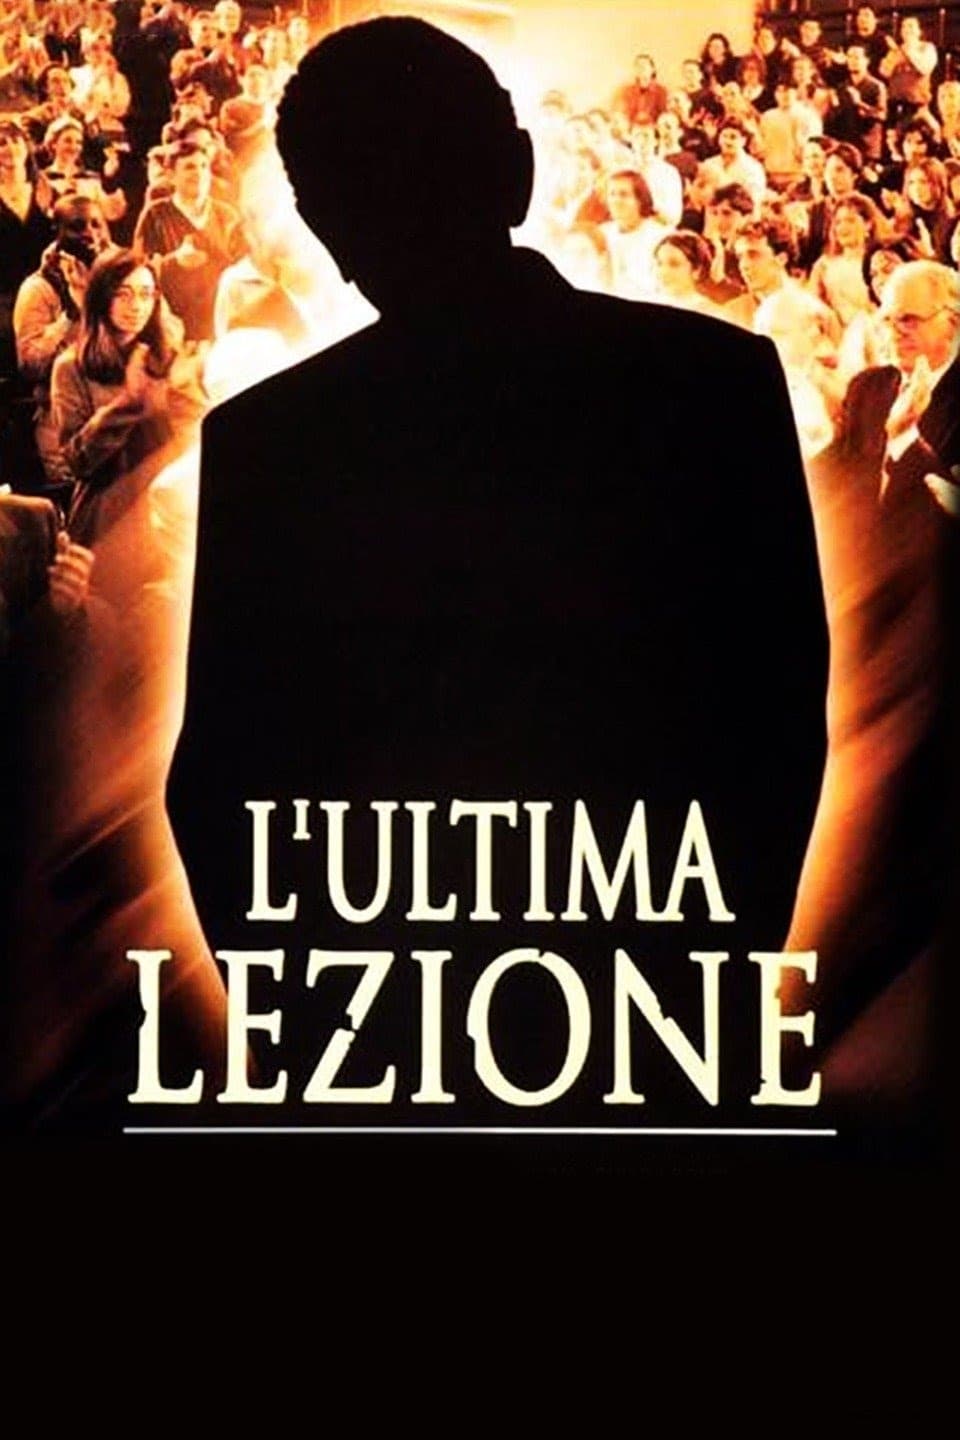 L'ultima lezione (2001)